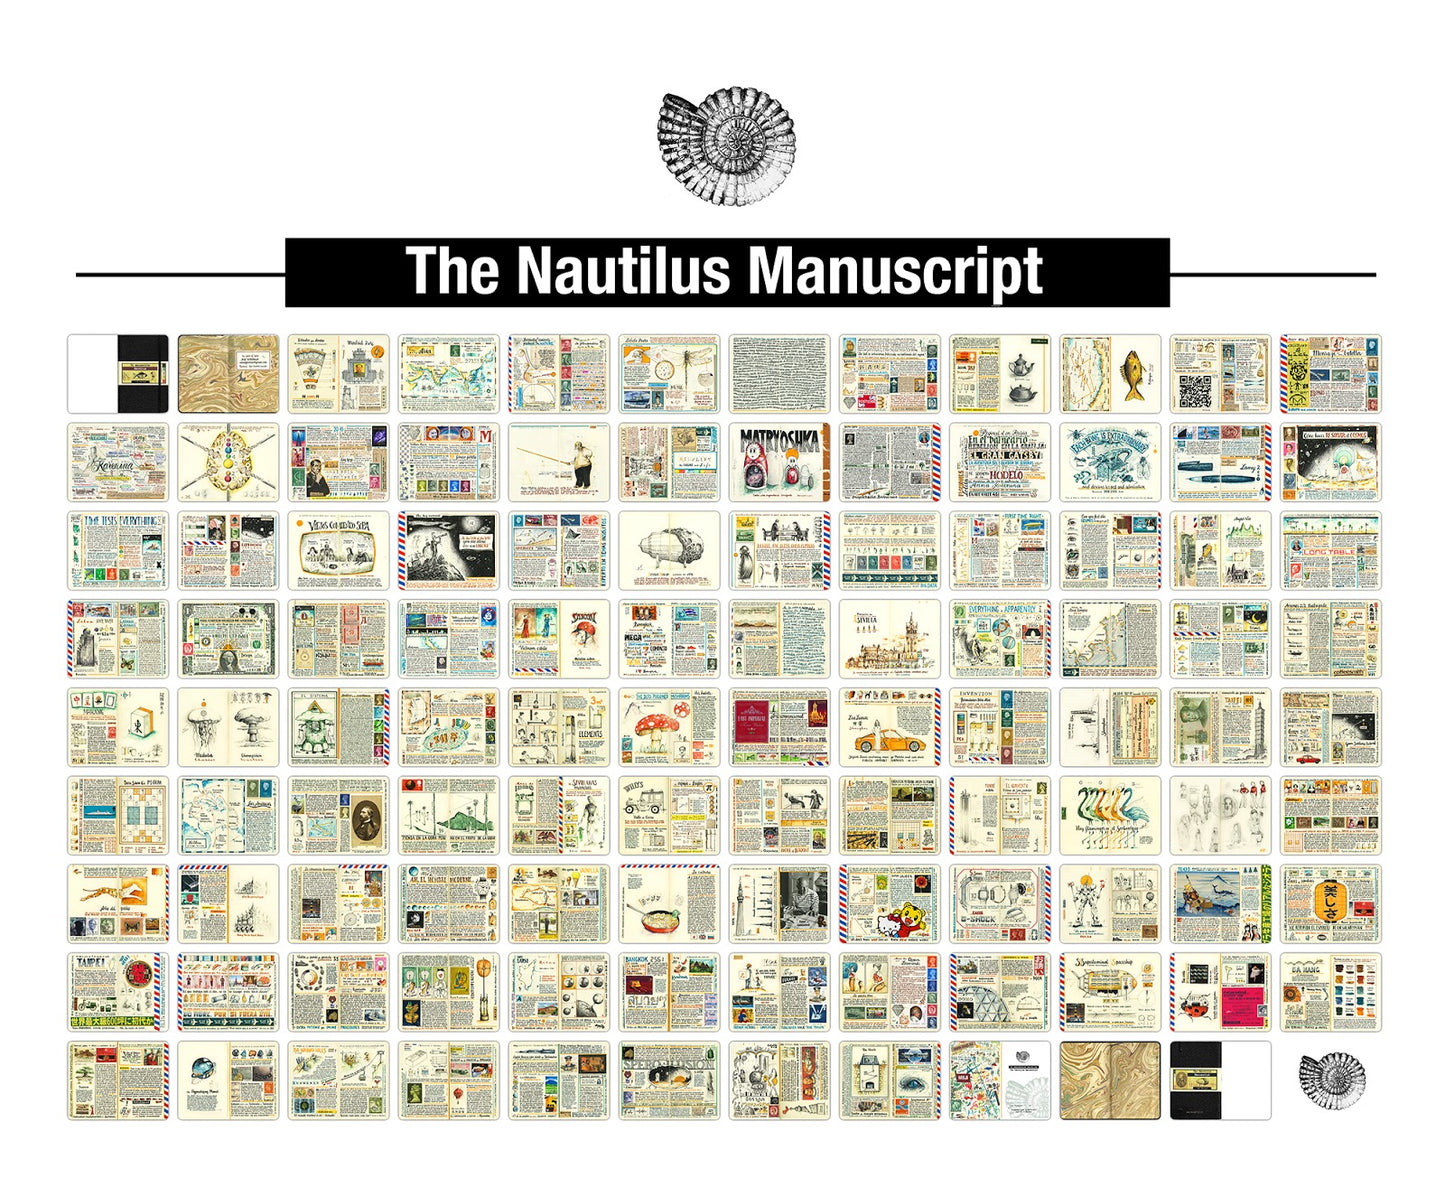 The Nautilus Manuscript by José Naranja